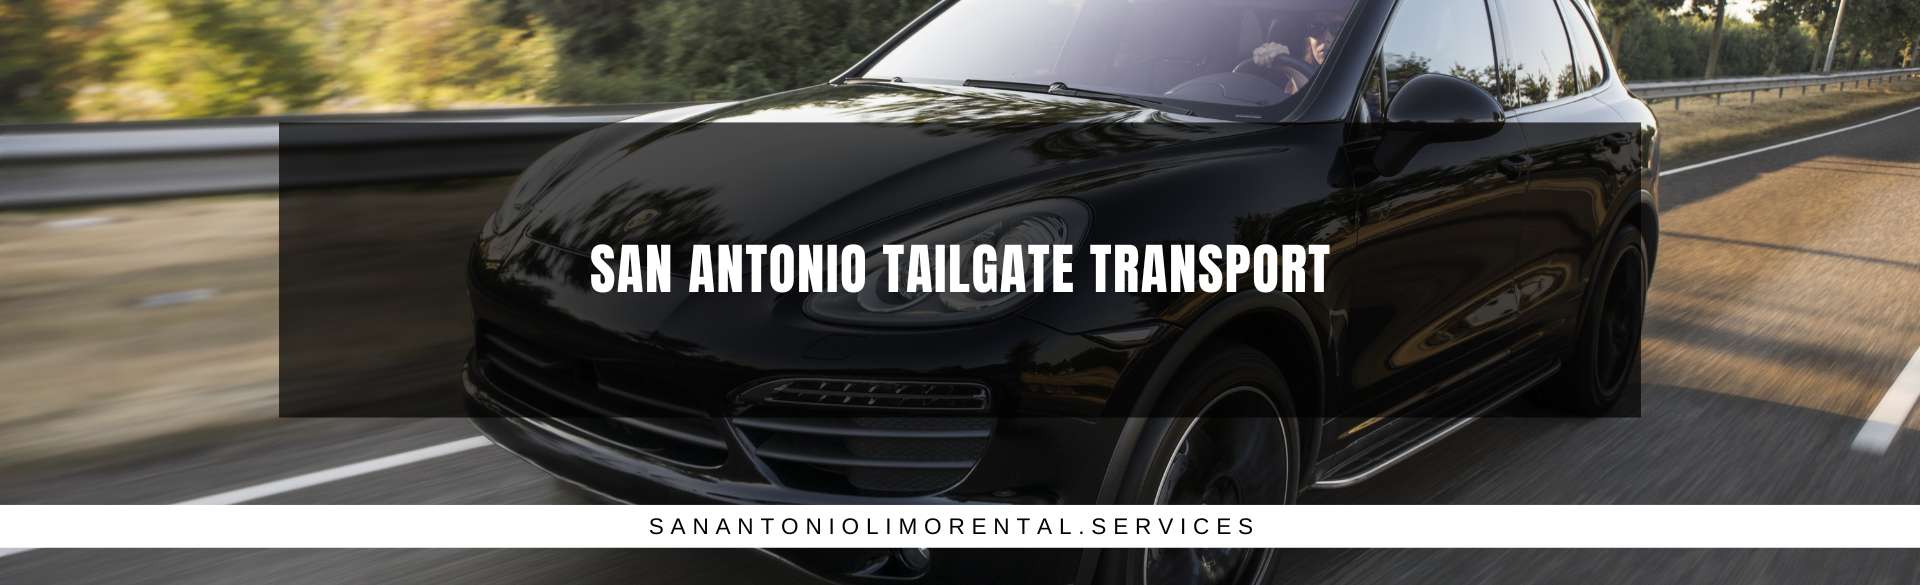 San Antonio Tailgate Transport